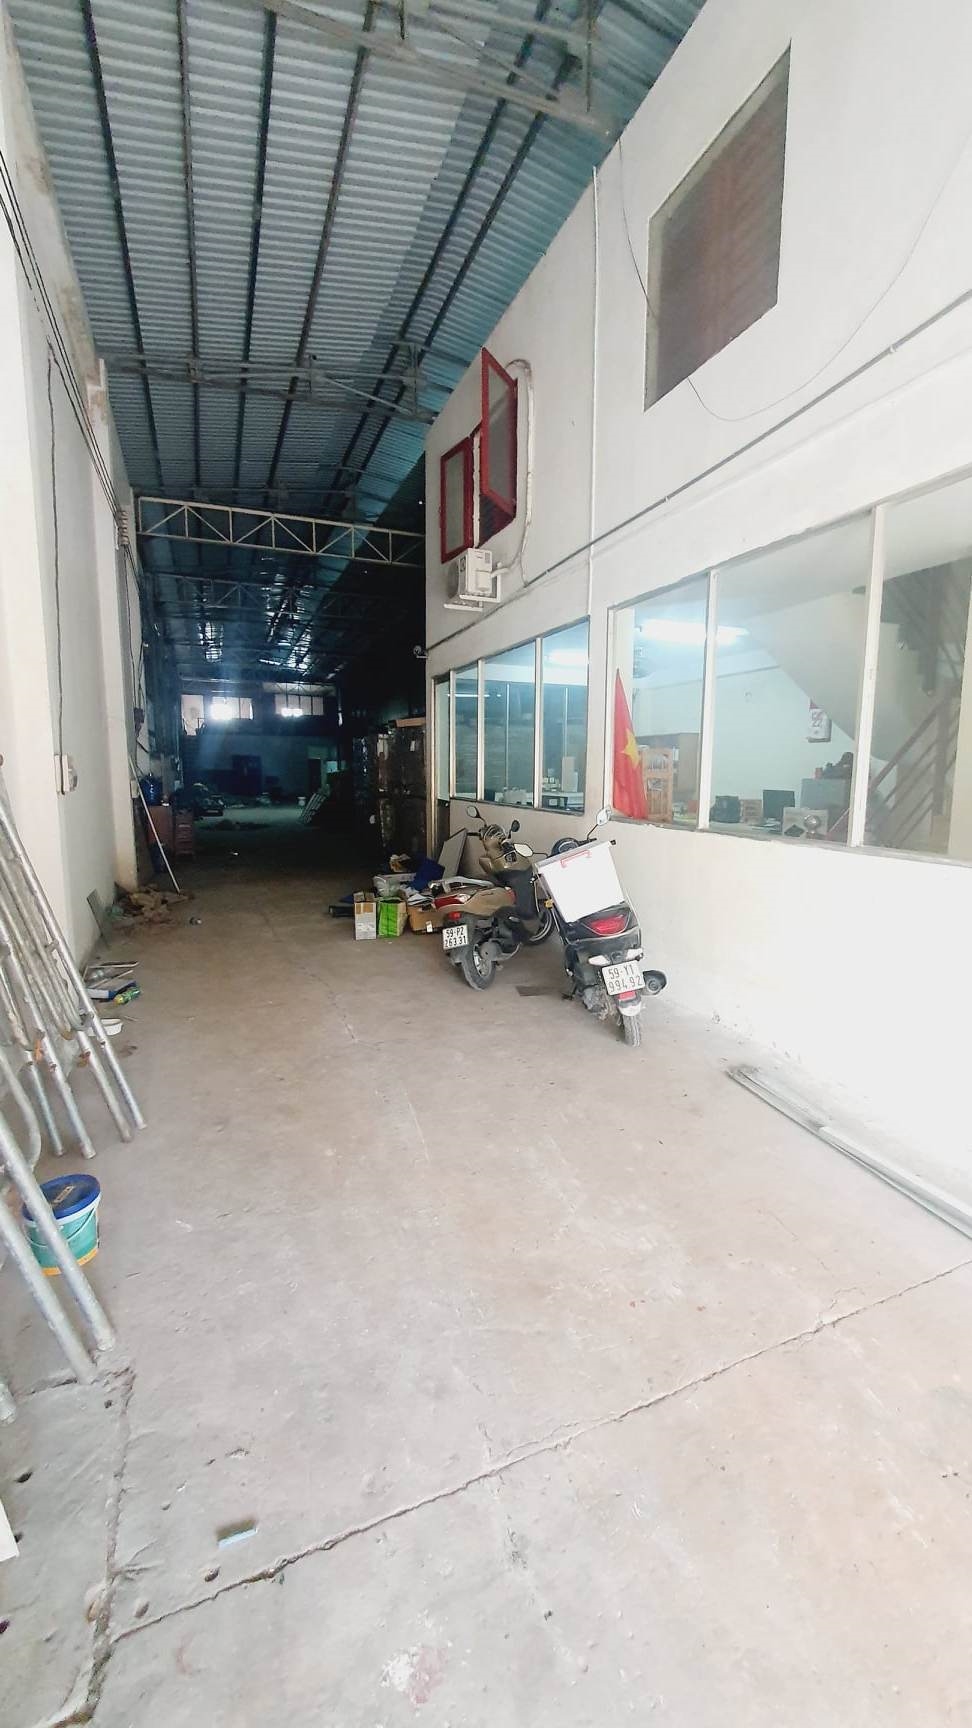 Cho thuê xưởng 400m2 gần Trần Văn Mười, đường XXT6, cho nhà văn phòng, bếp ăn..v.v.